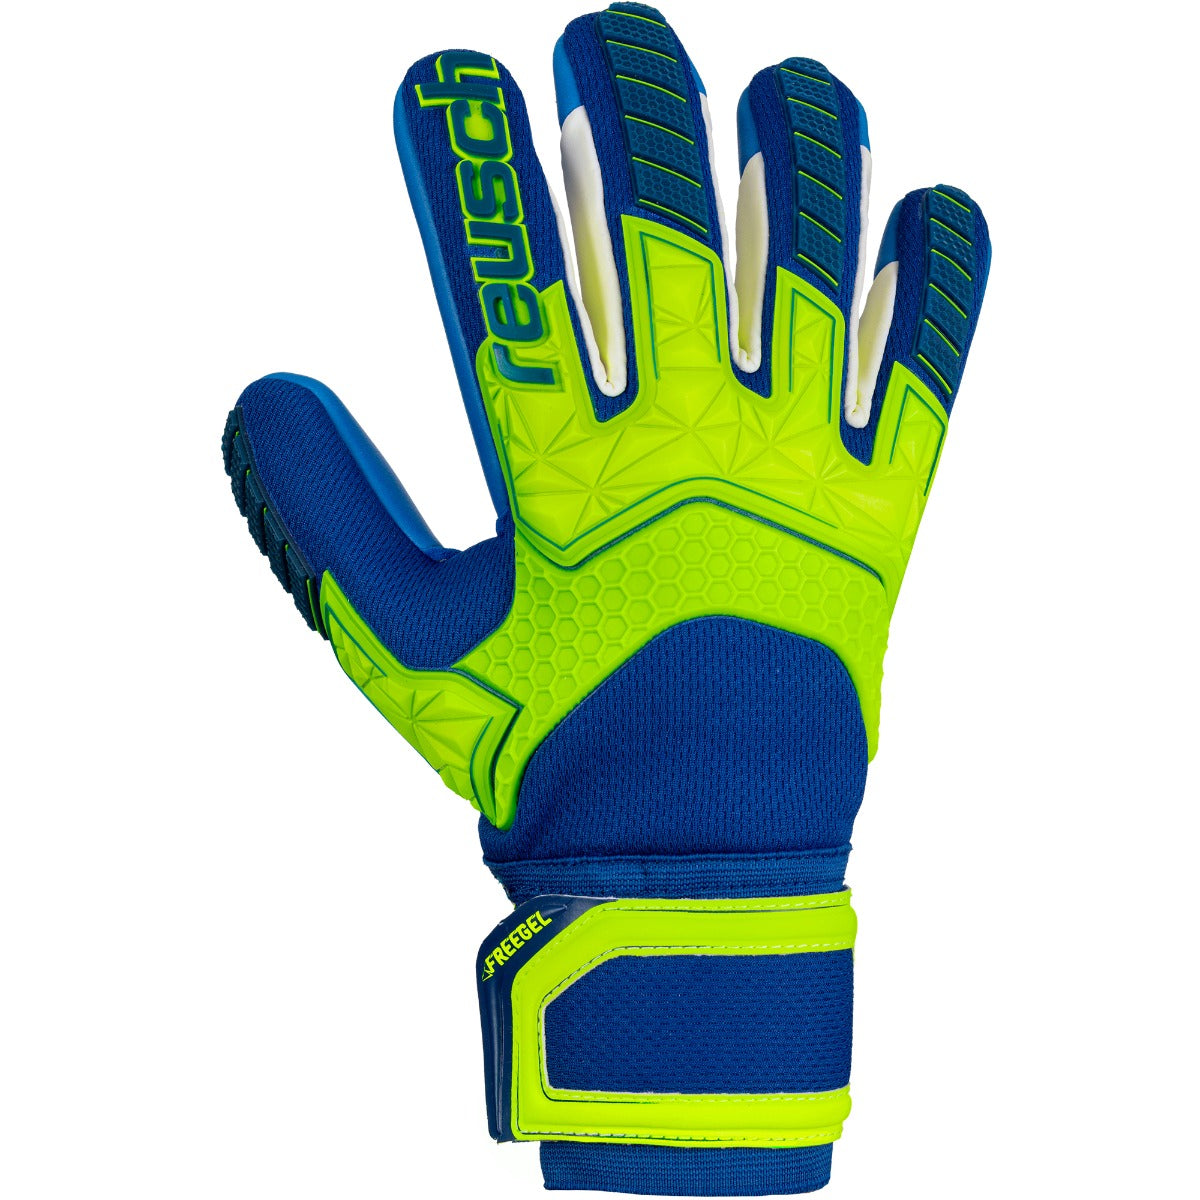 Reusch Attrakt Freegel S1 Finger Support LTD Goalkeeper Gloves - Royal-Volt (Single - Outer)